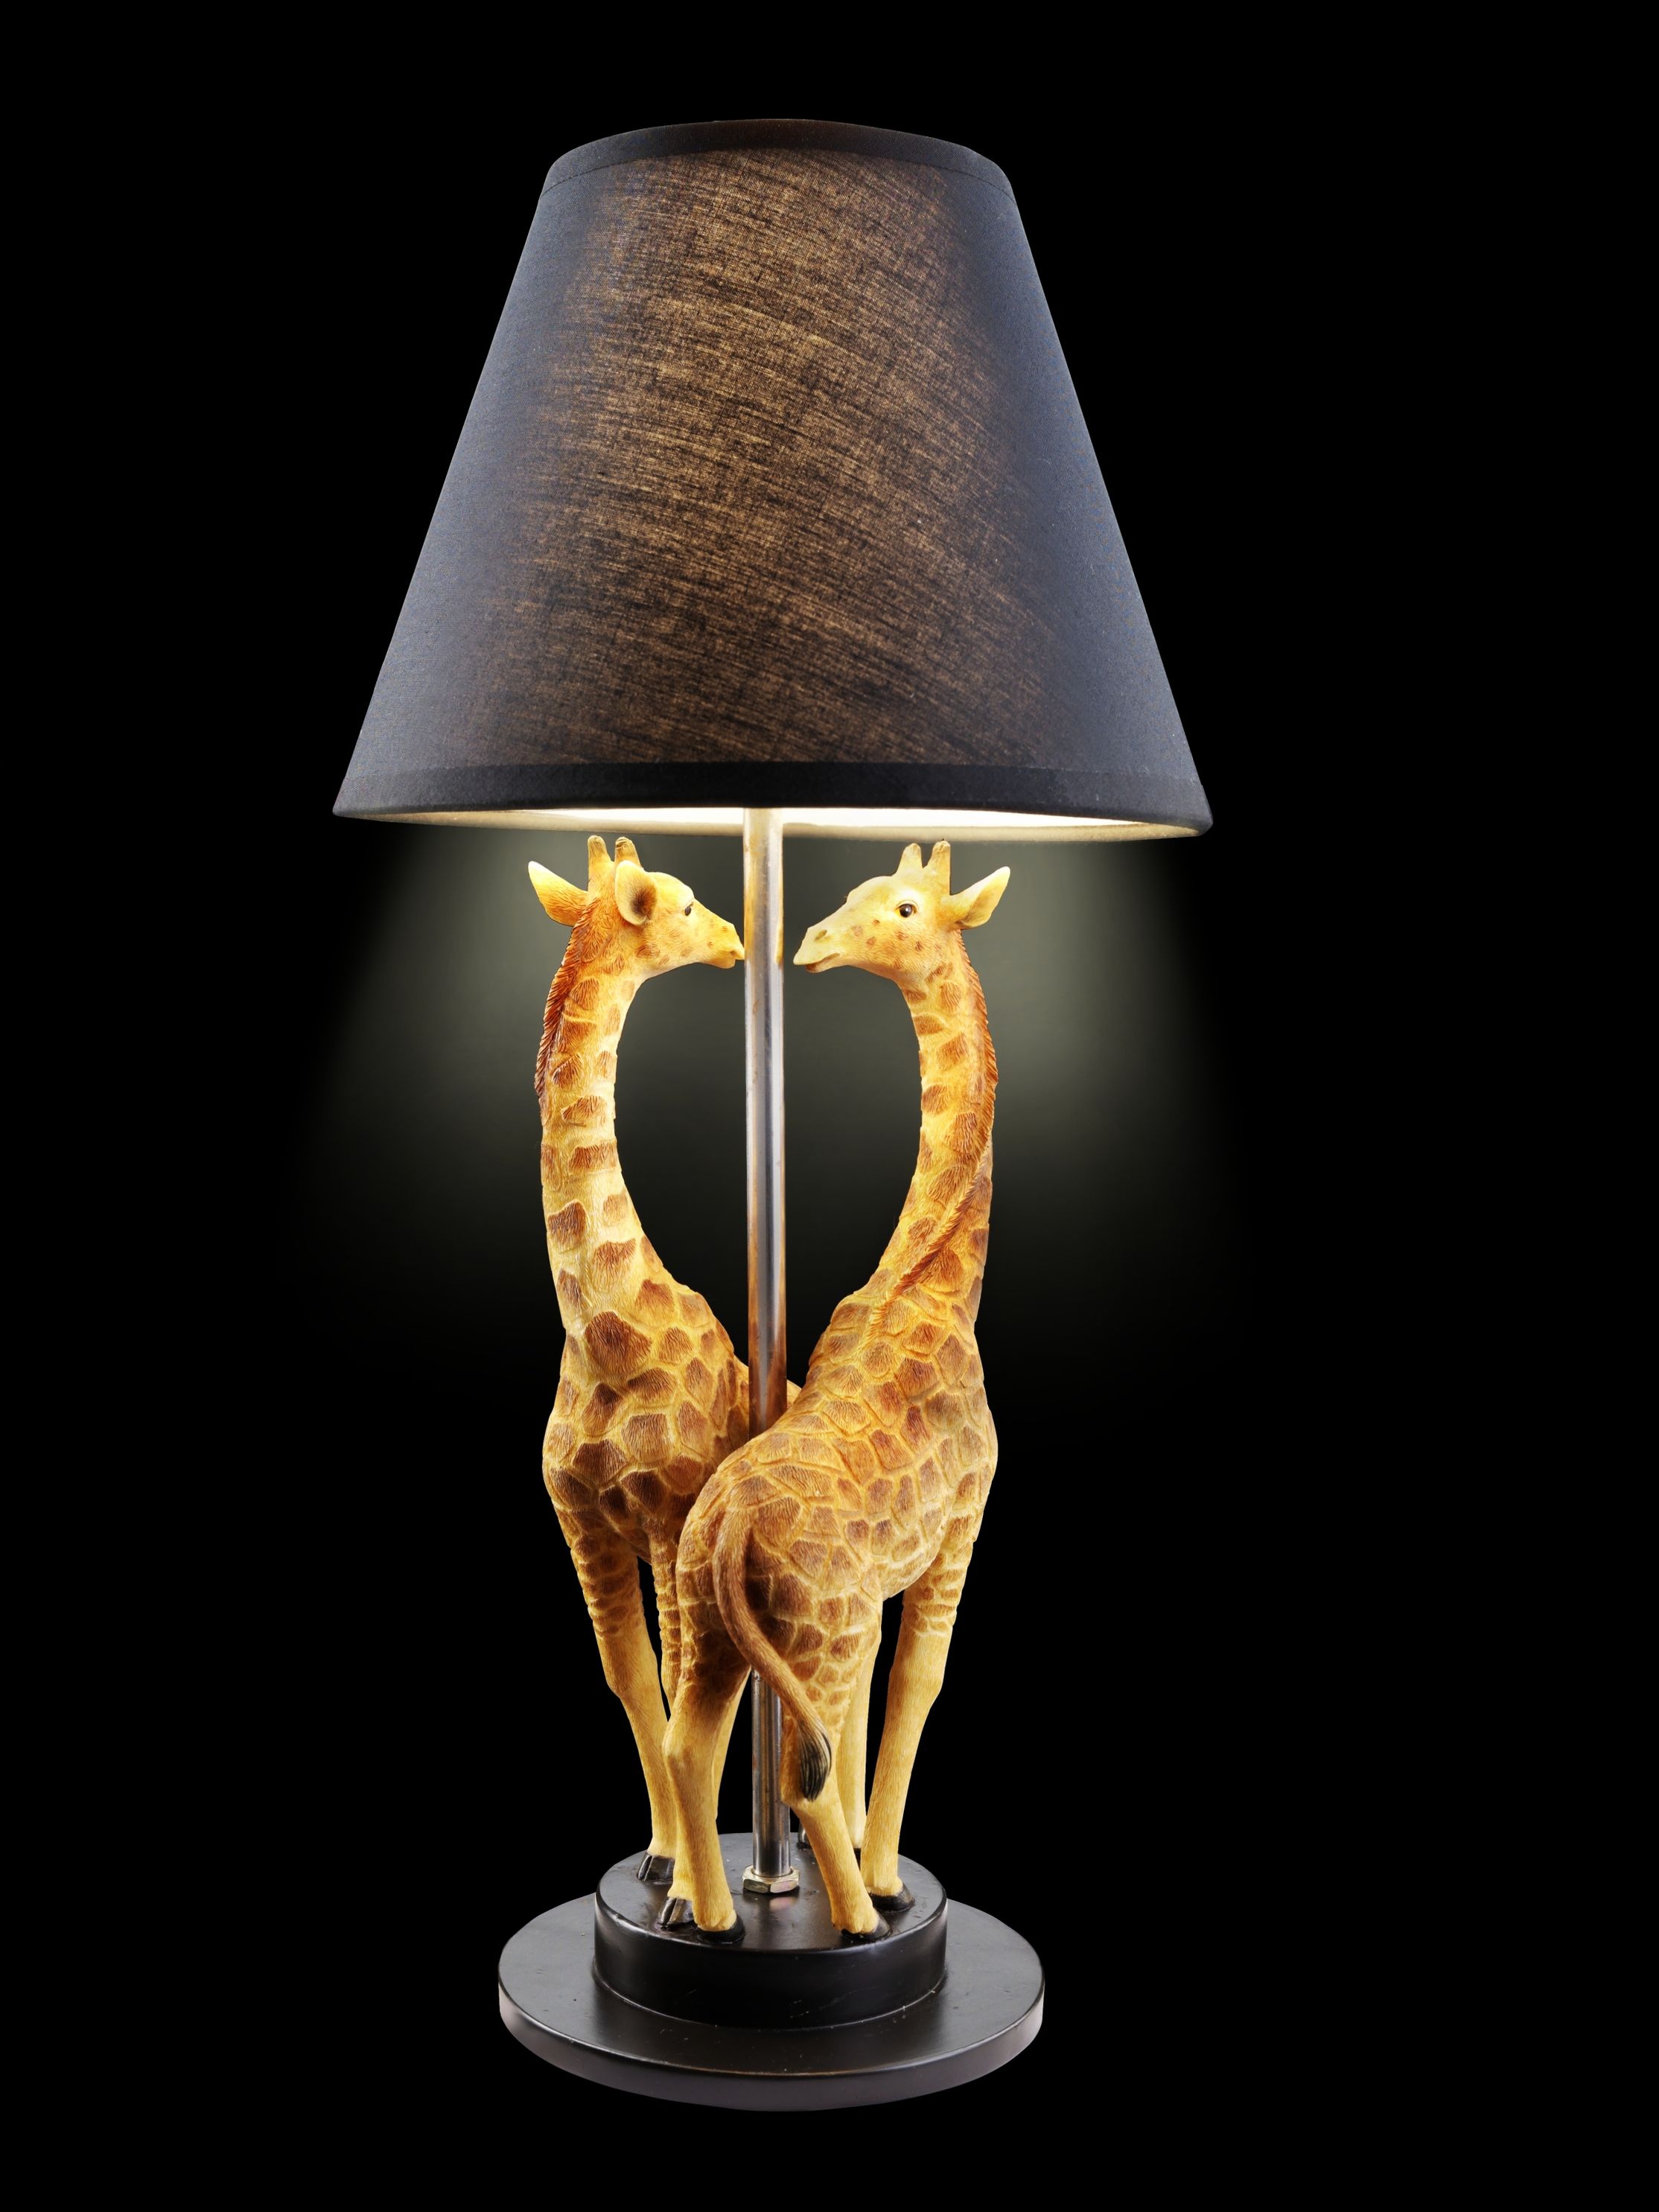 Tischlampe Giraffen jetzt bei Weltbild.de bestellen